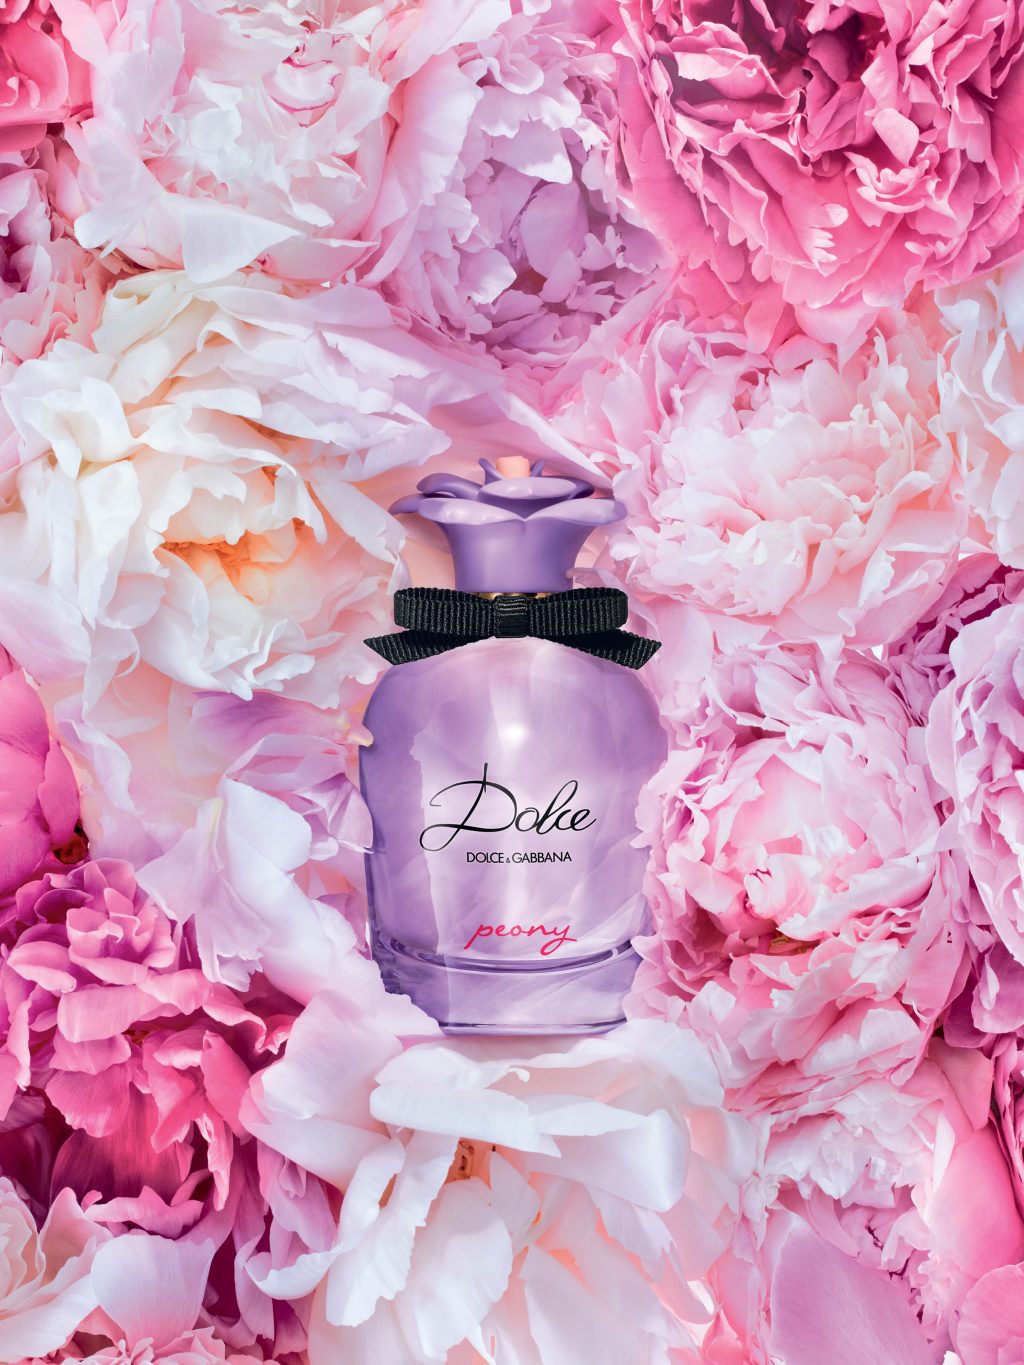 Dolce & Gabbana giới thiệu dòng nước hoa Dolce Peony 3